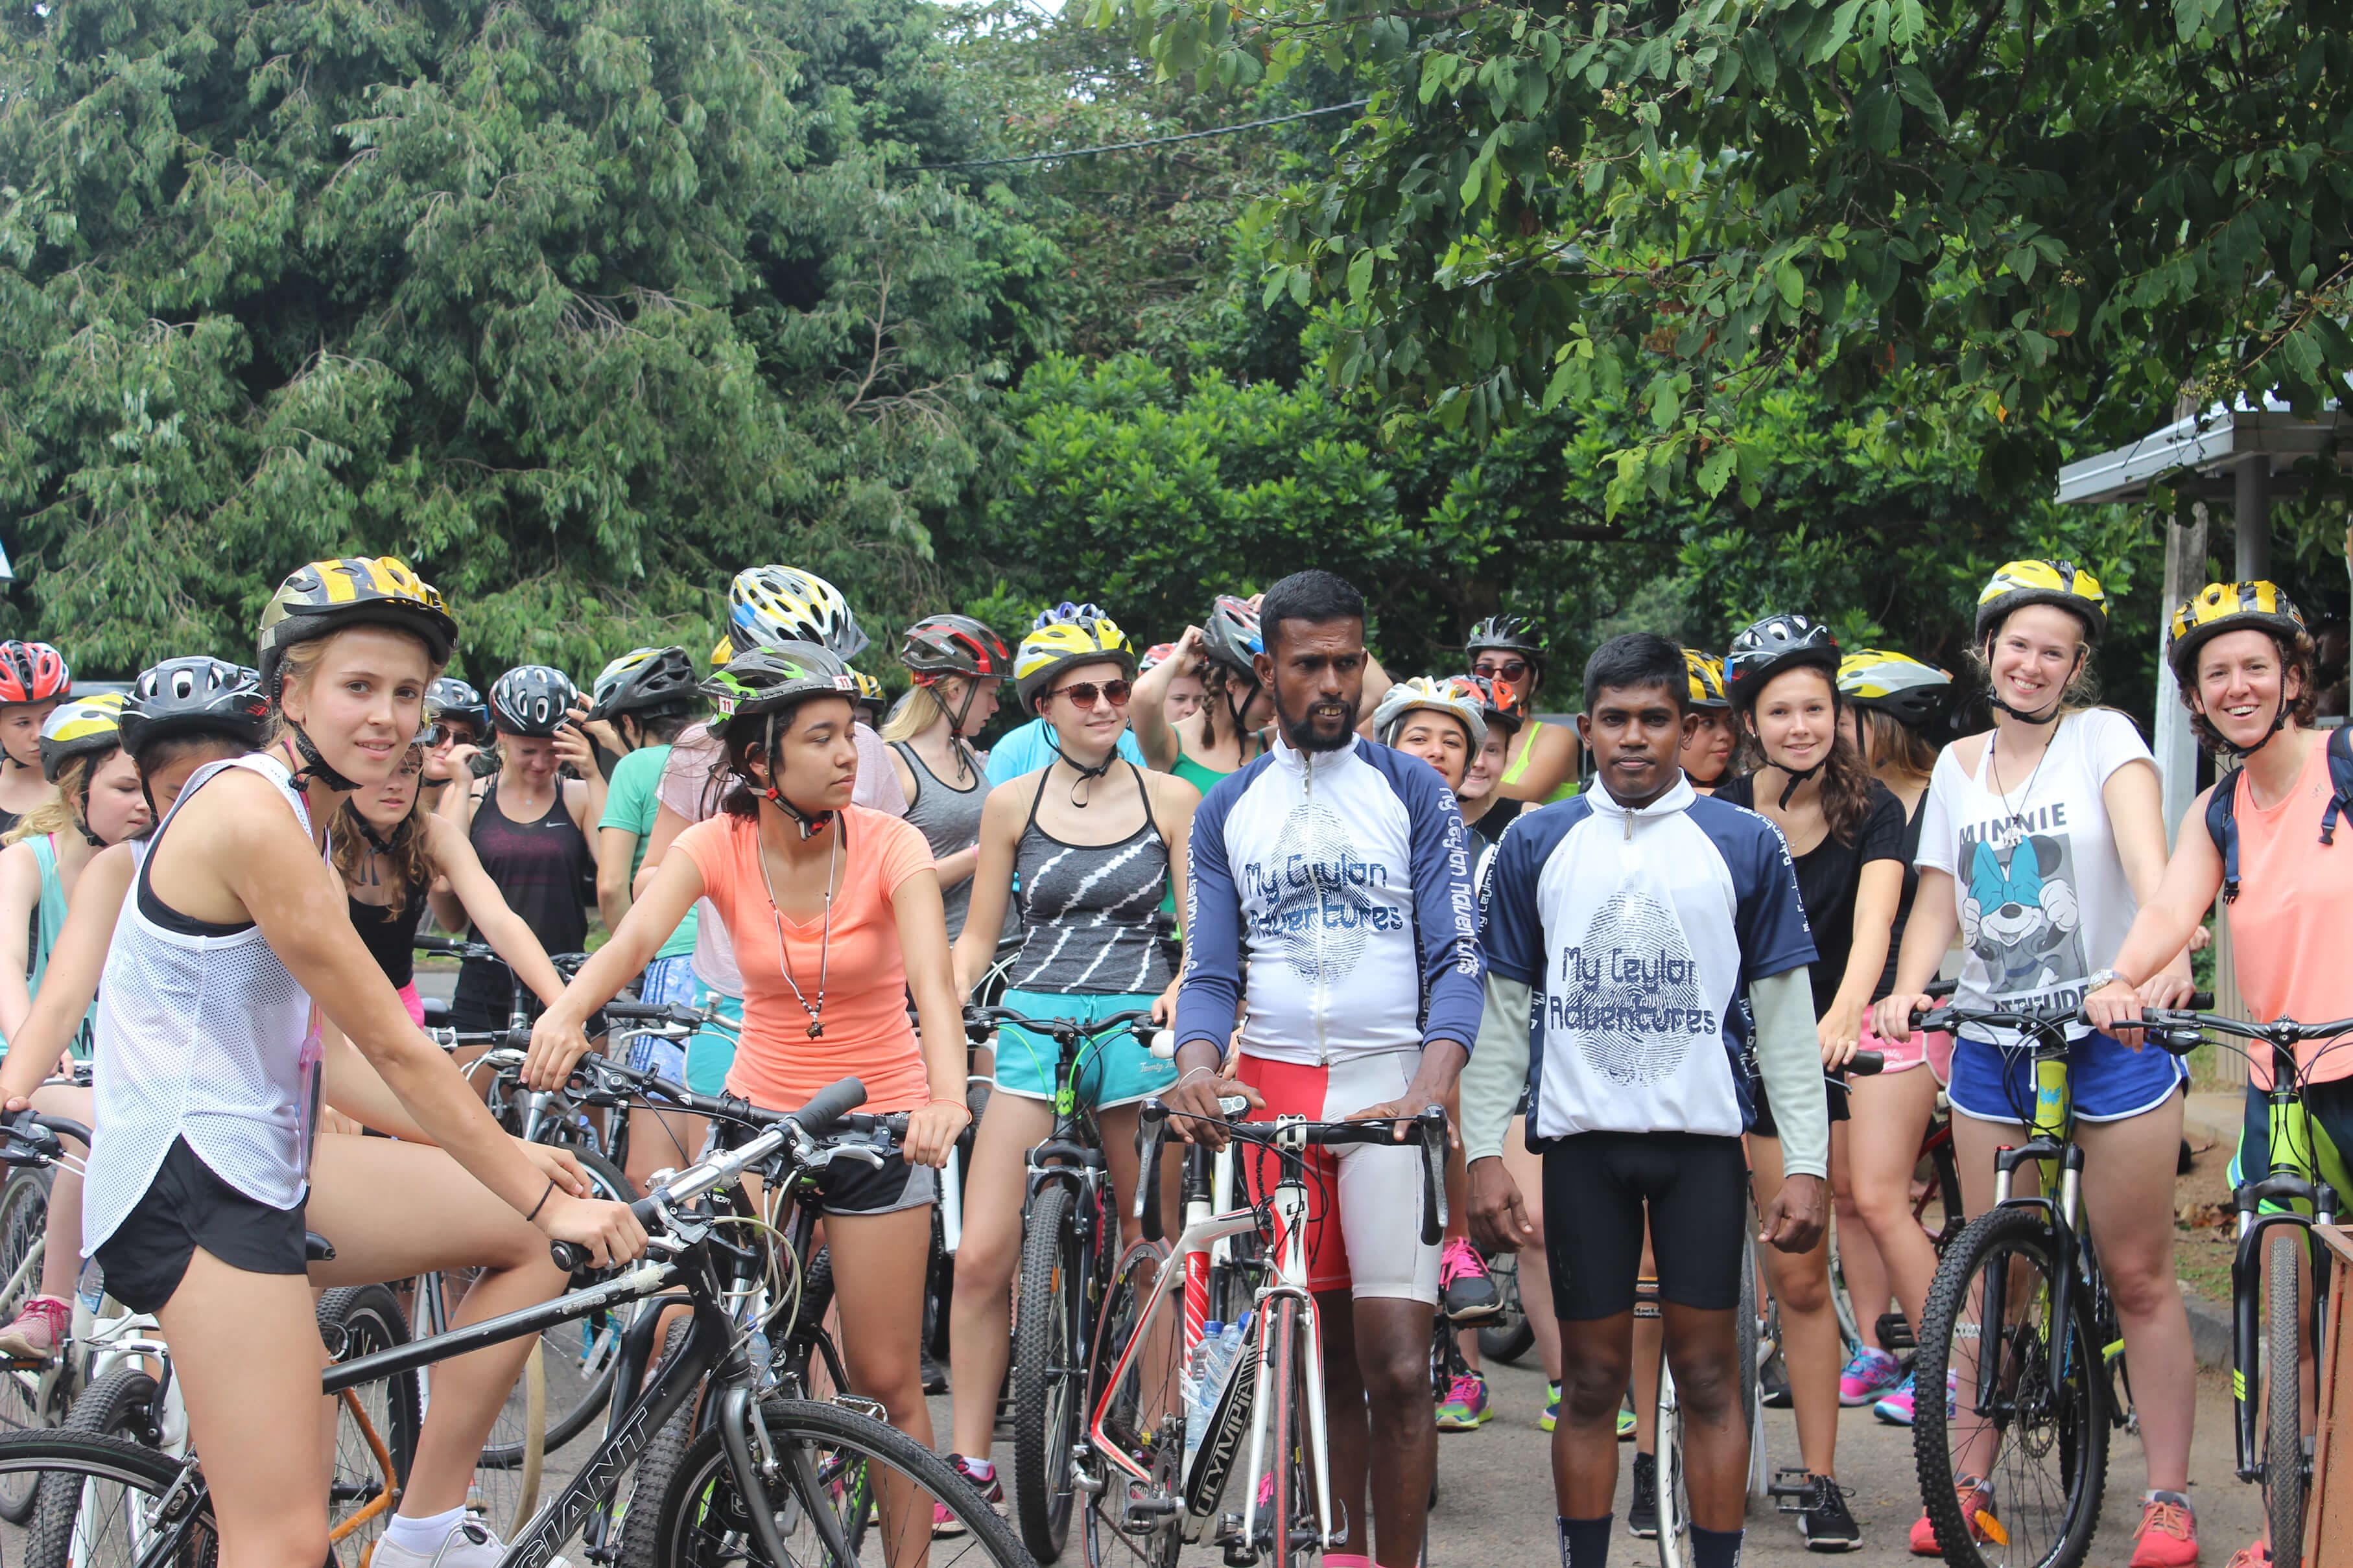 Un grupo de turistas preparándose para iniciar el recorrido en bicicleta por la campiña de Colombo, Sri Lanka.